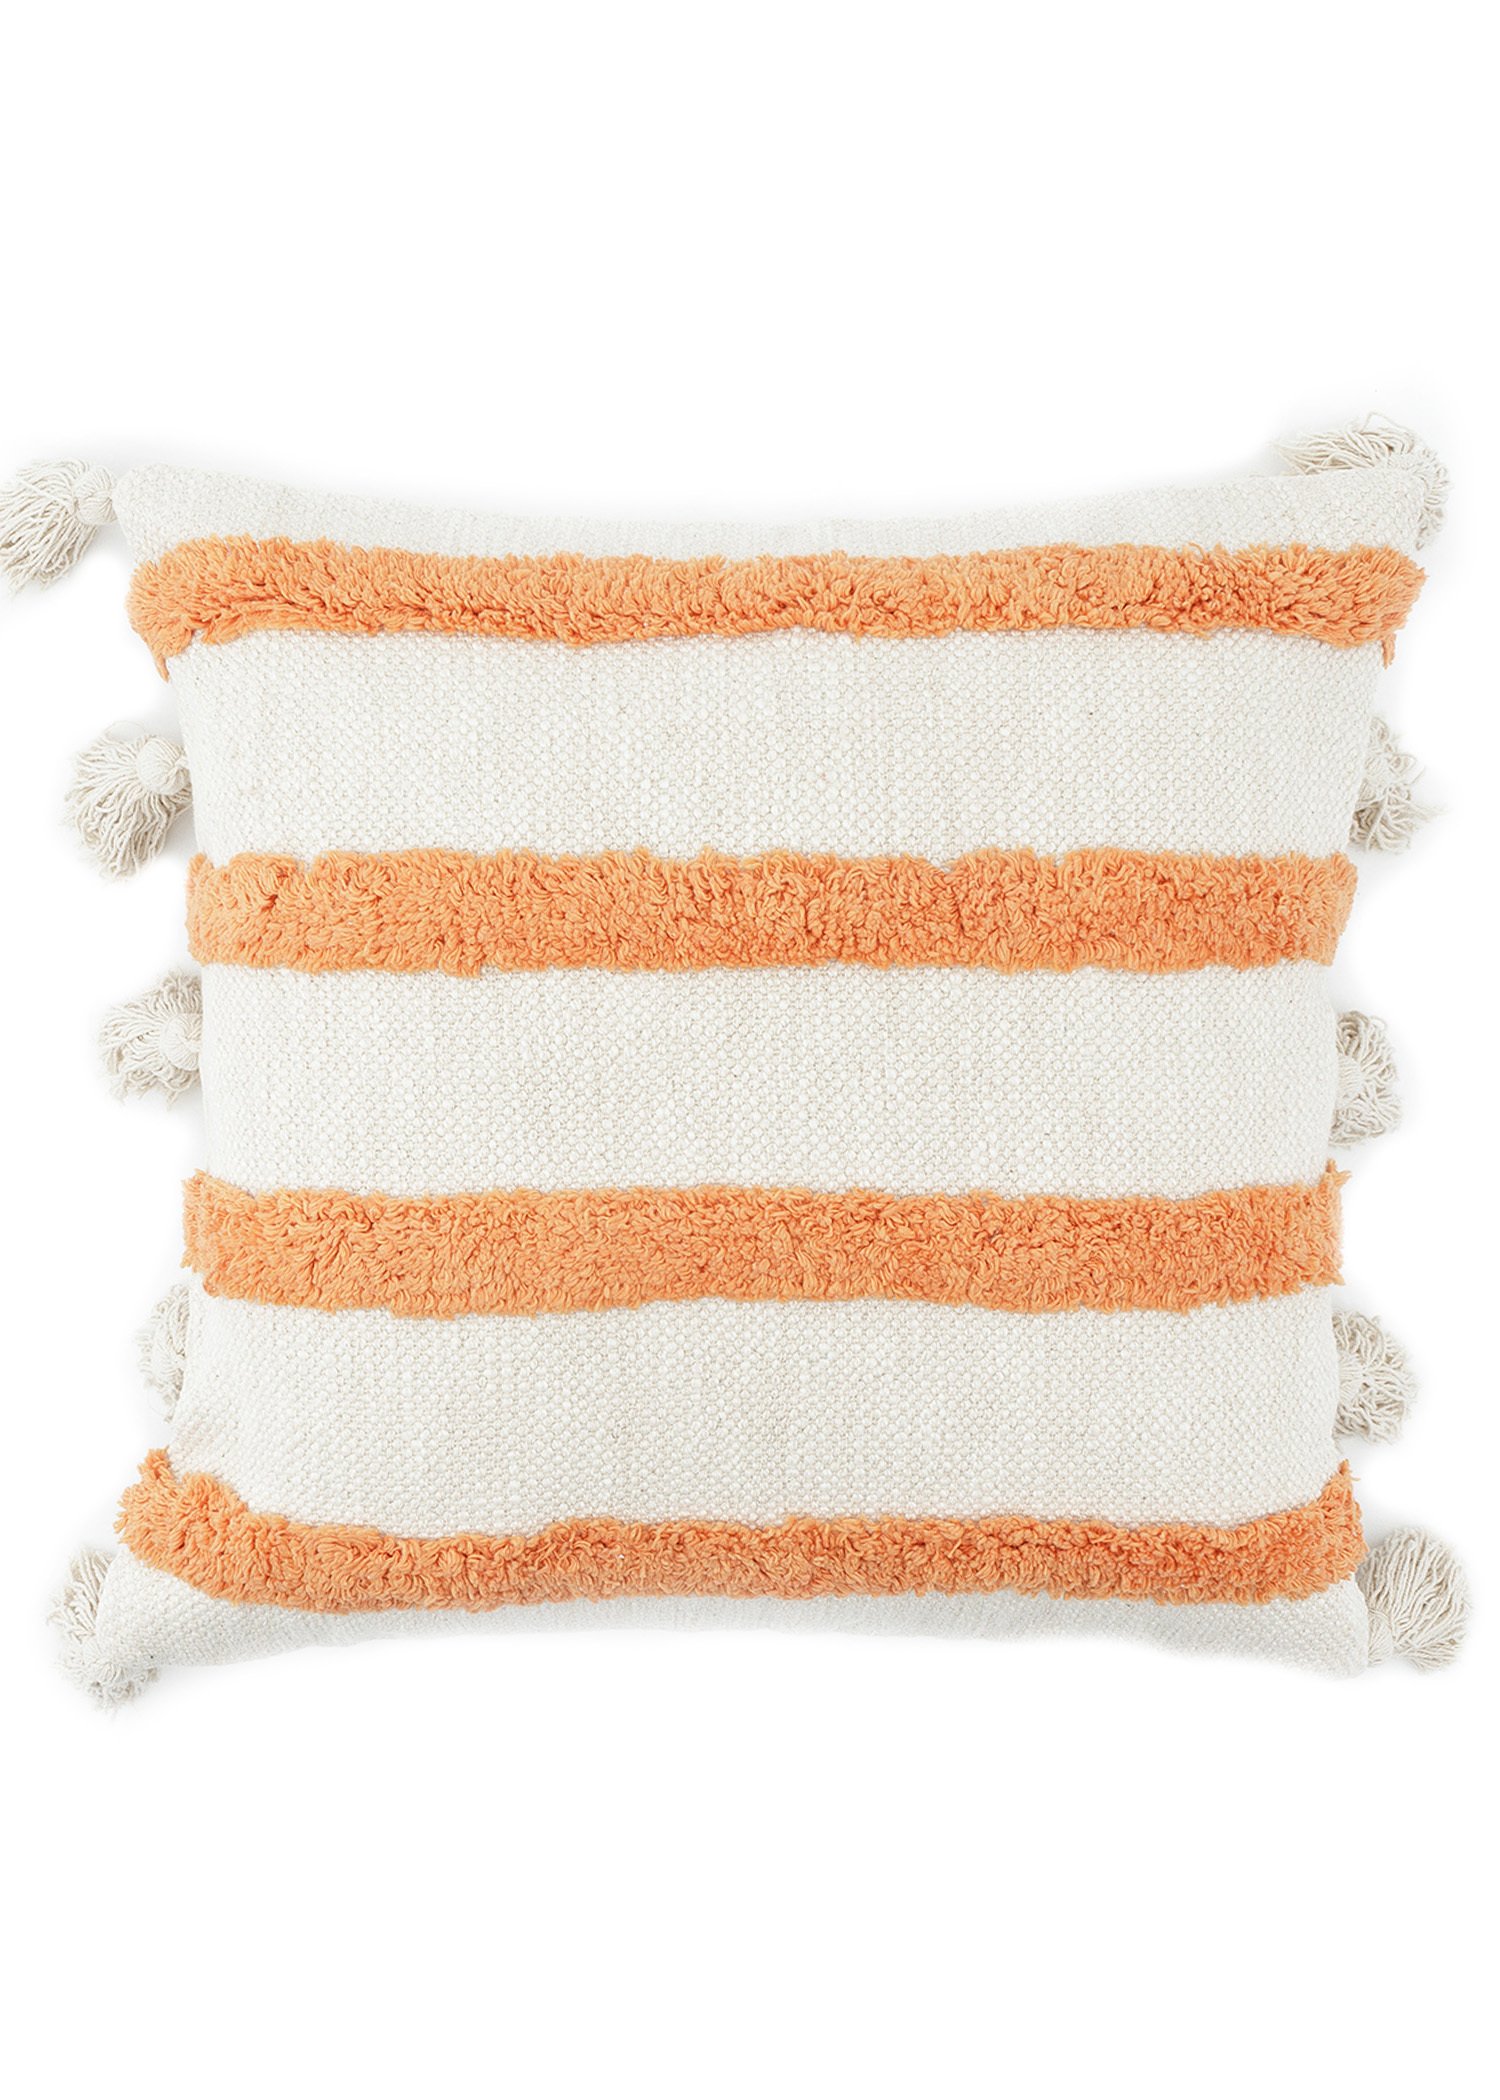 Kissen aus Baumwolle mit Tufting-Muster Image 0